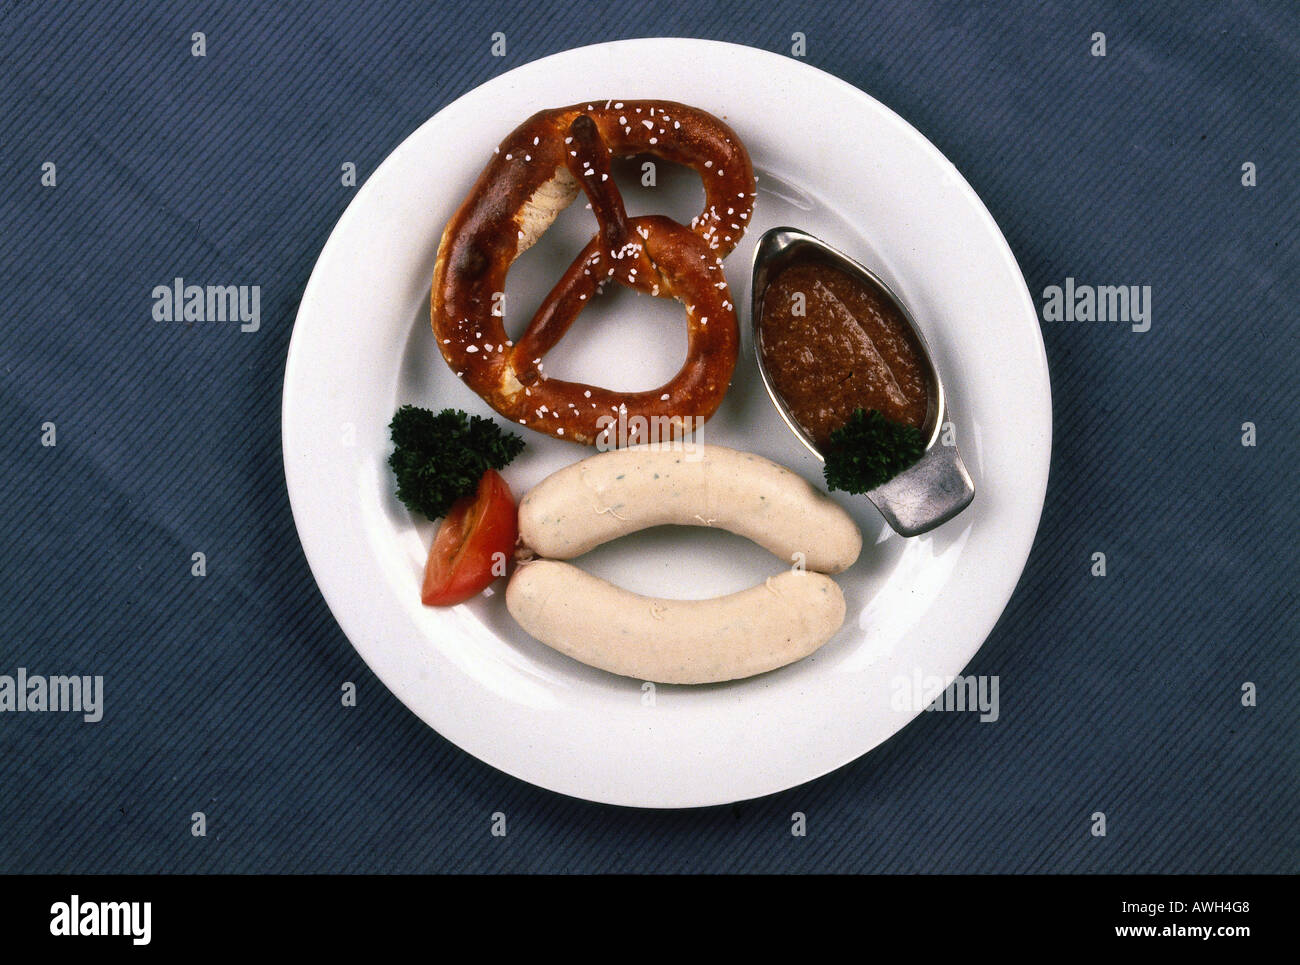 Allemagne, Bavière, Weißwurst mit Süssem Senf, saucisse blanche servi avec de la moutarde douce et bretzel Banque D'Images